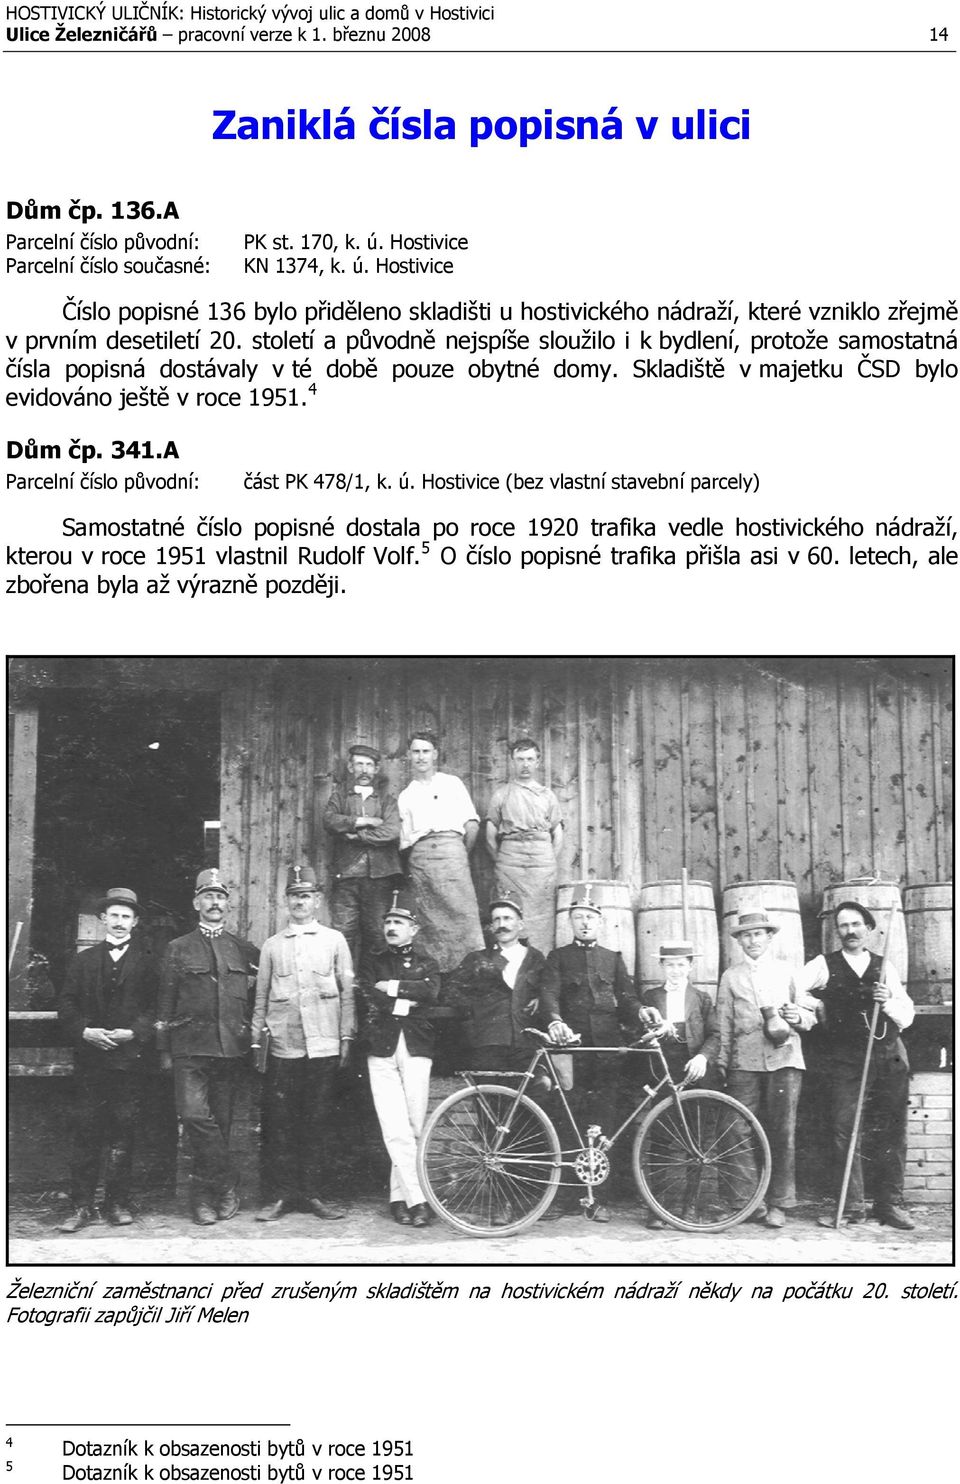 století a původně nejspíše sloužilo i k bydlení, protože samostatná čísla popisná dostávaly v té době pouze obytné domy. Skladiště v majetku ČSD bylo evidováno ještě v roce 1951. 4 Dům čp. 341.